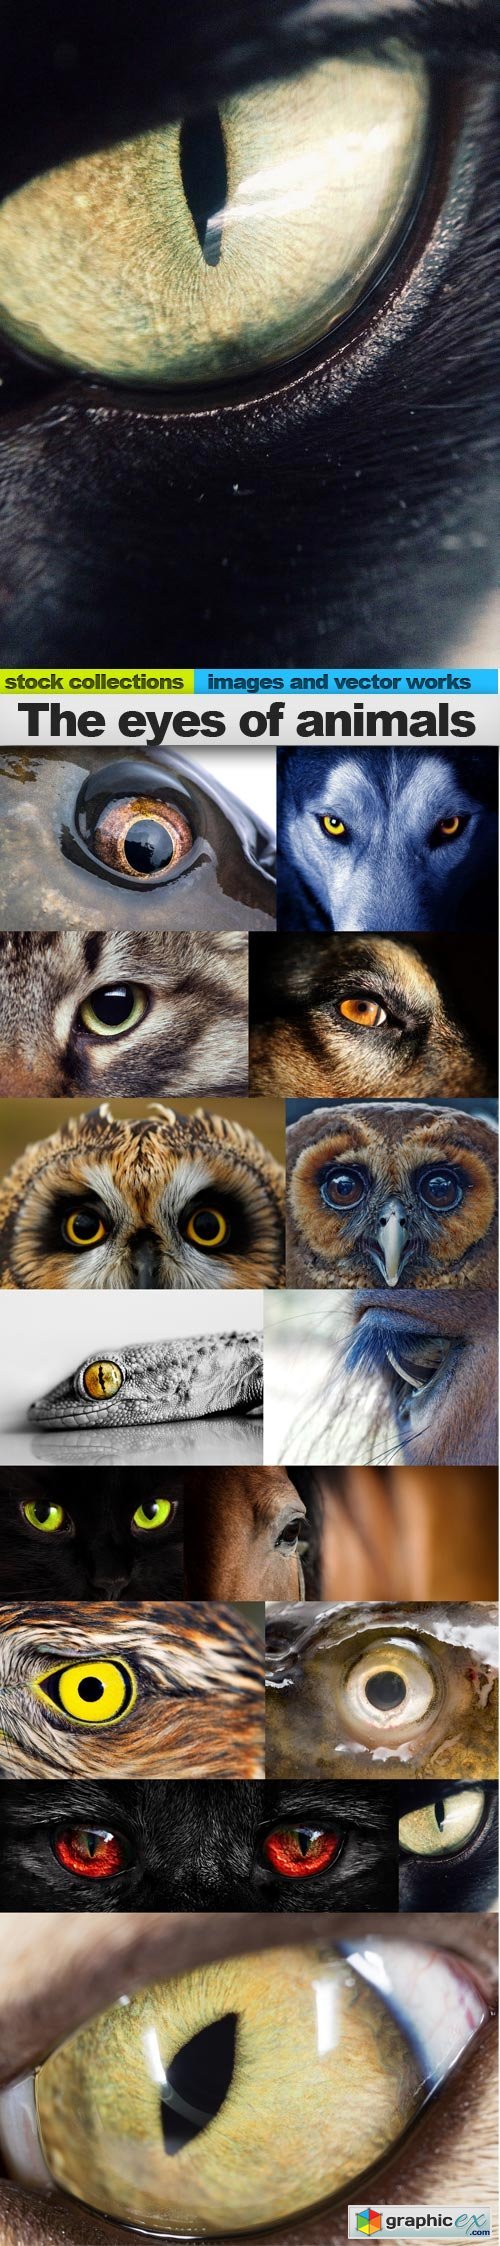 The eyes of animals, 15 x UHQ JPEG